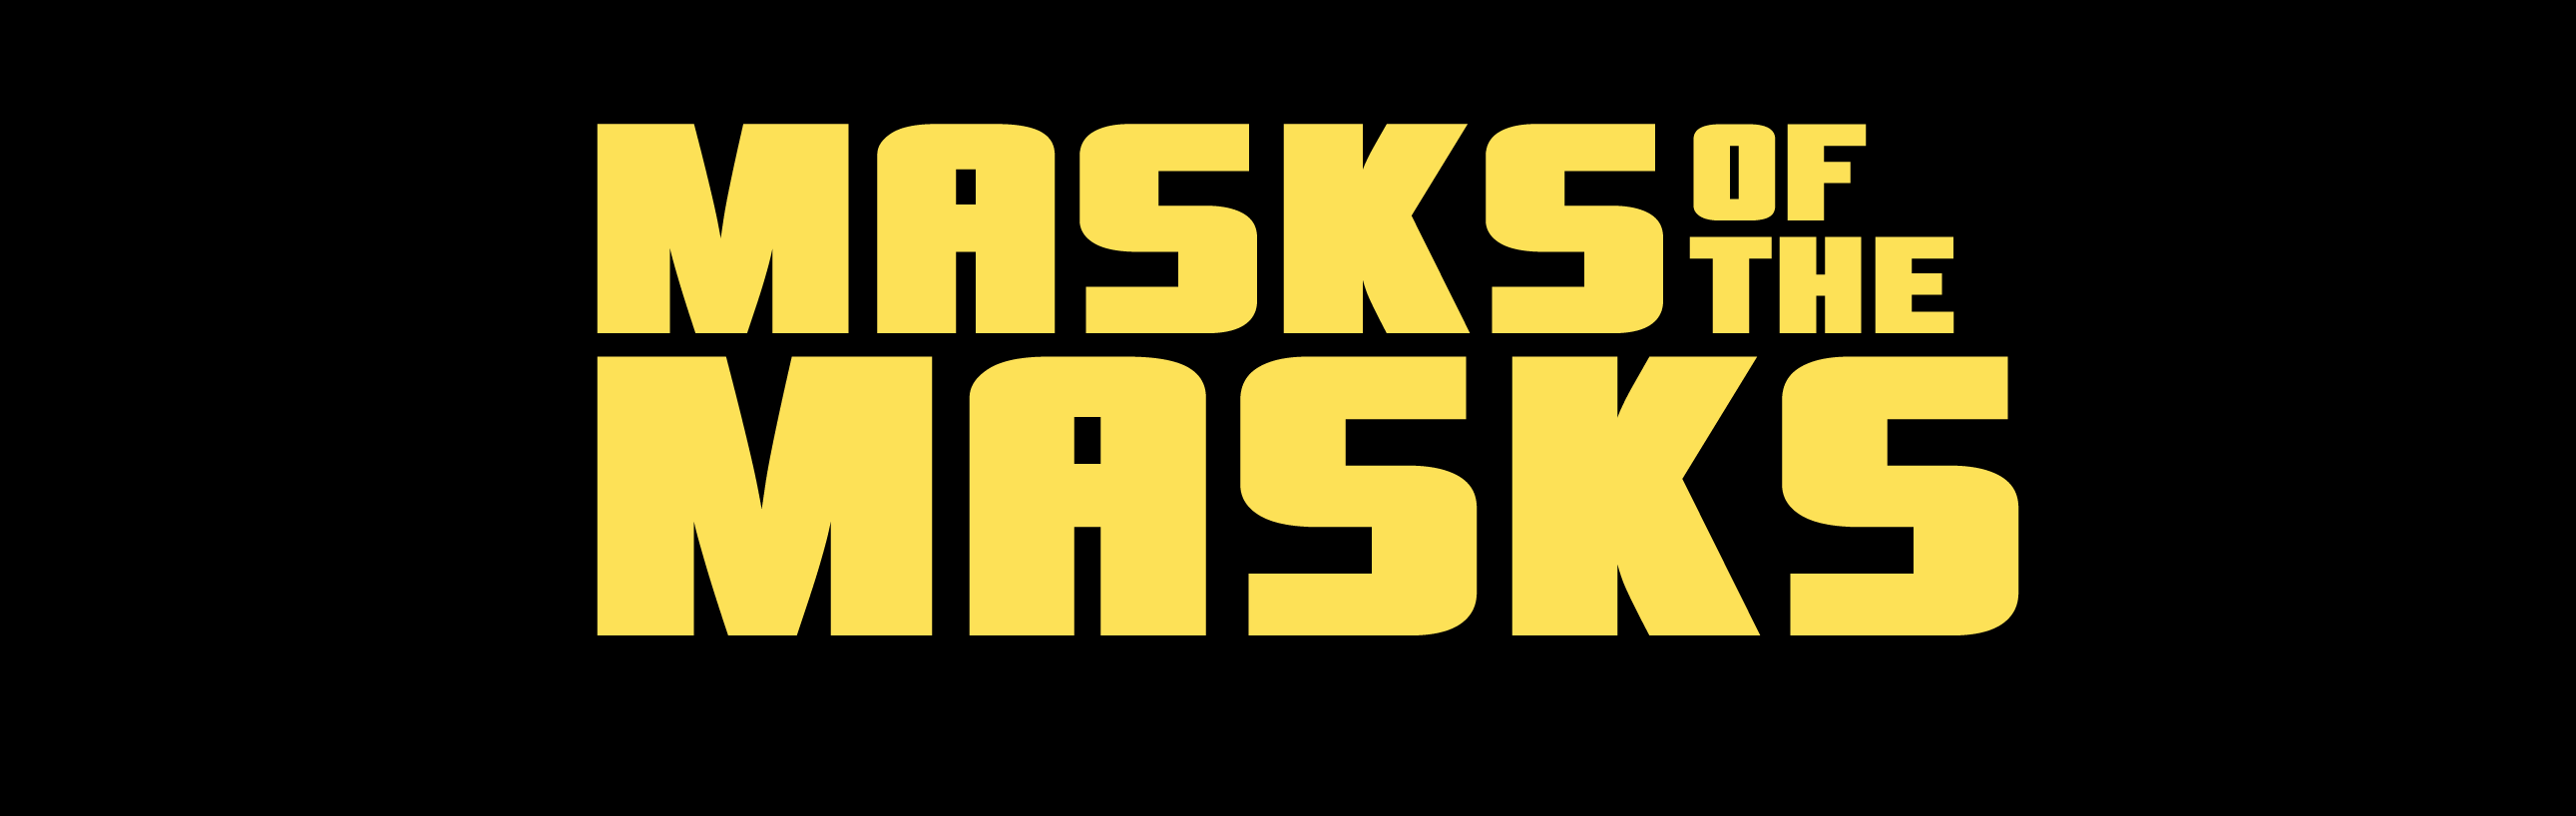 Masks of the Masks